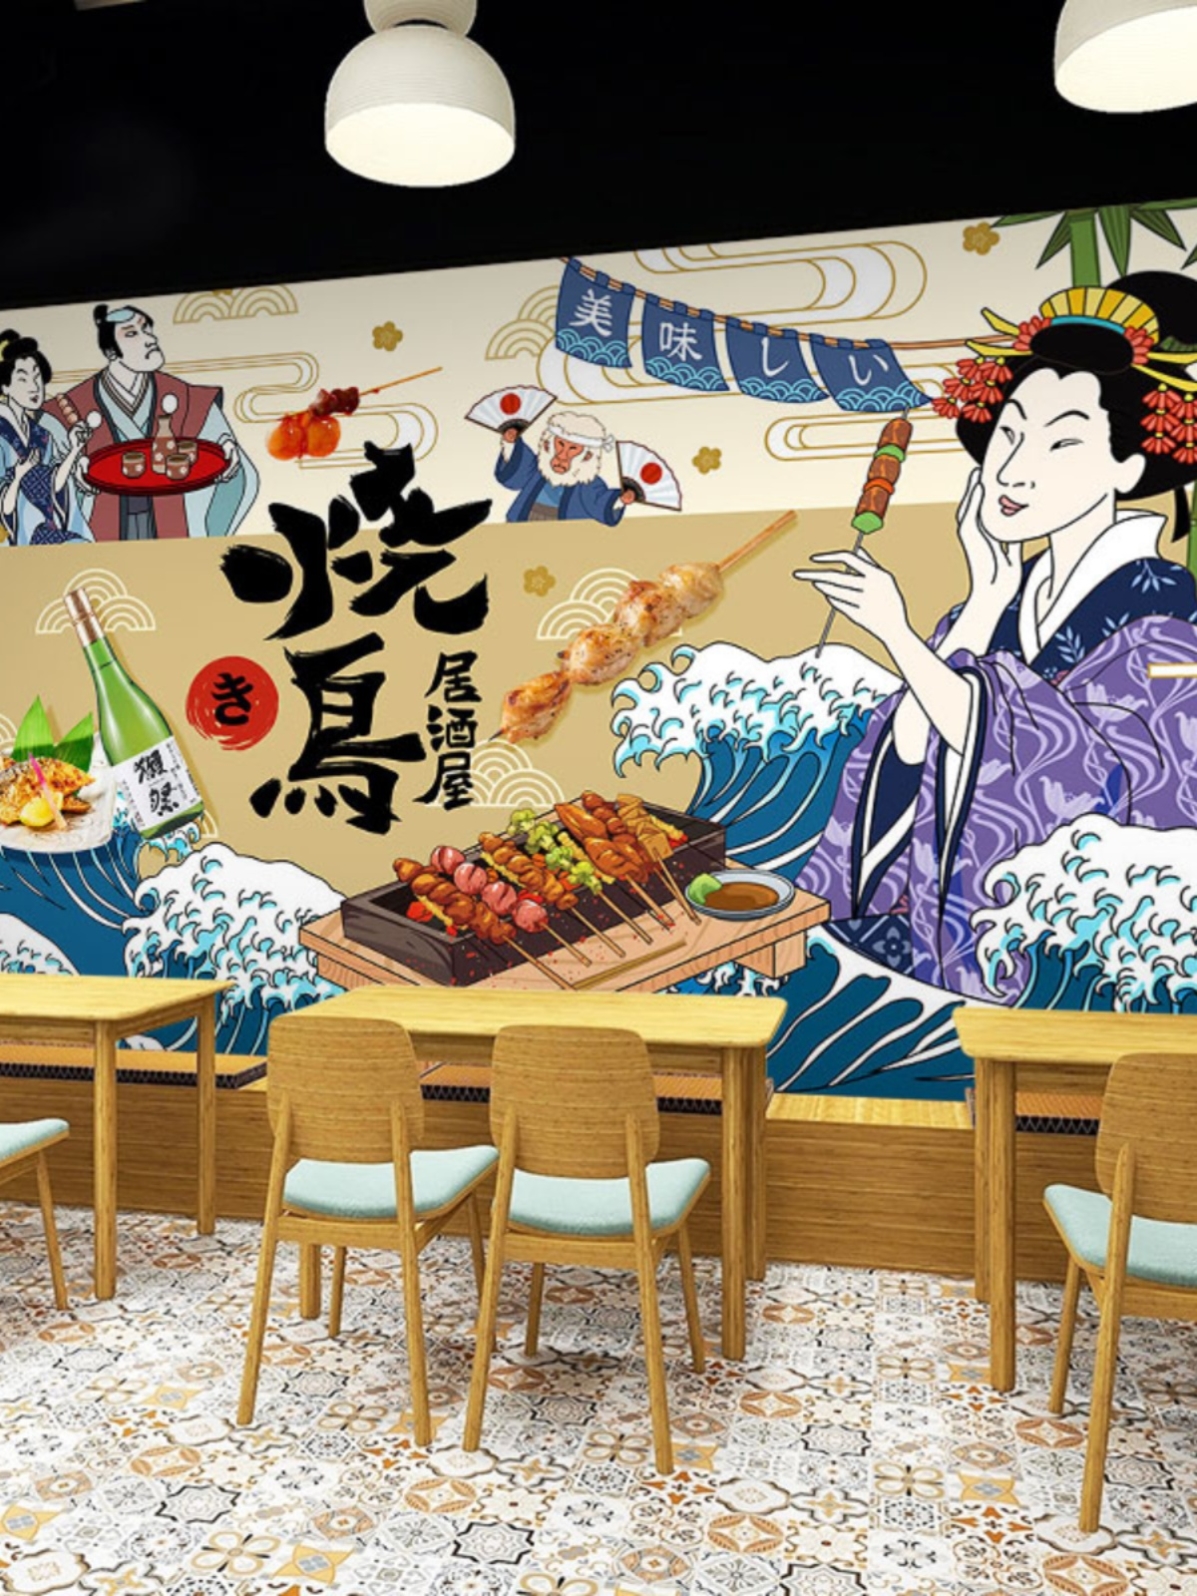 日式屋酒屋墙纸日本烧鸟宣传图片广告牌海报背景装饰画日料店壁纸图片